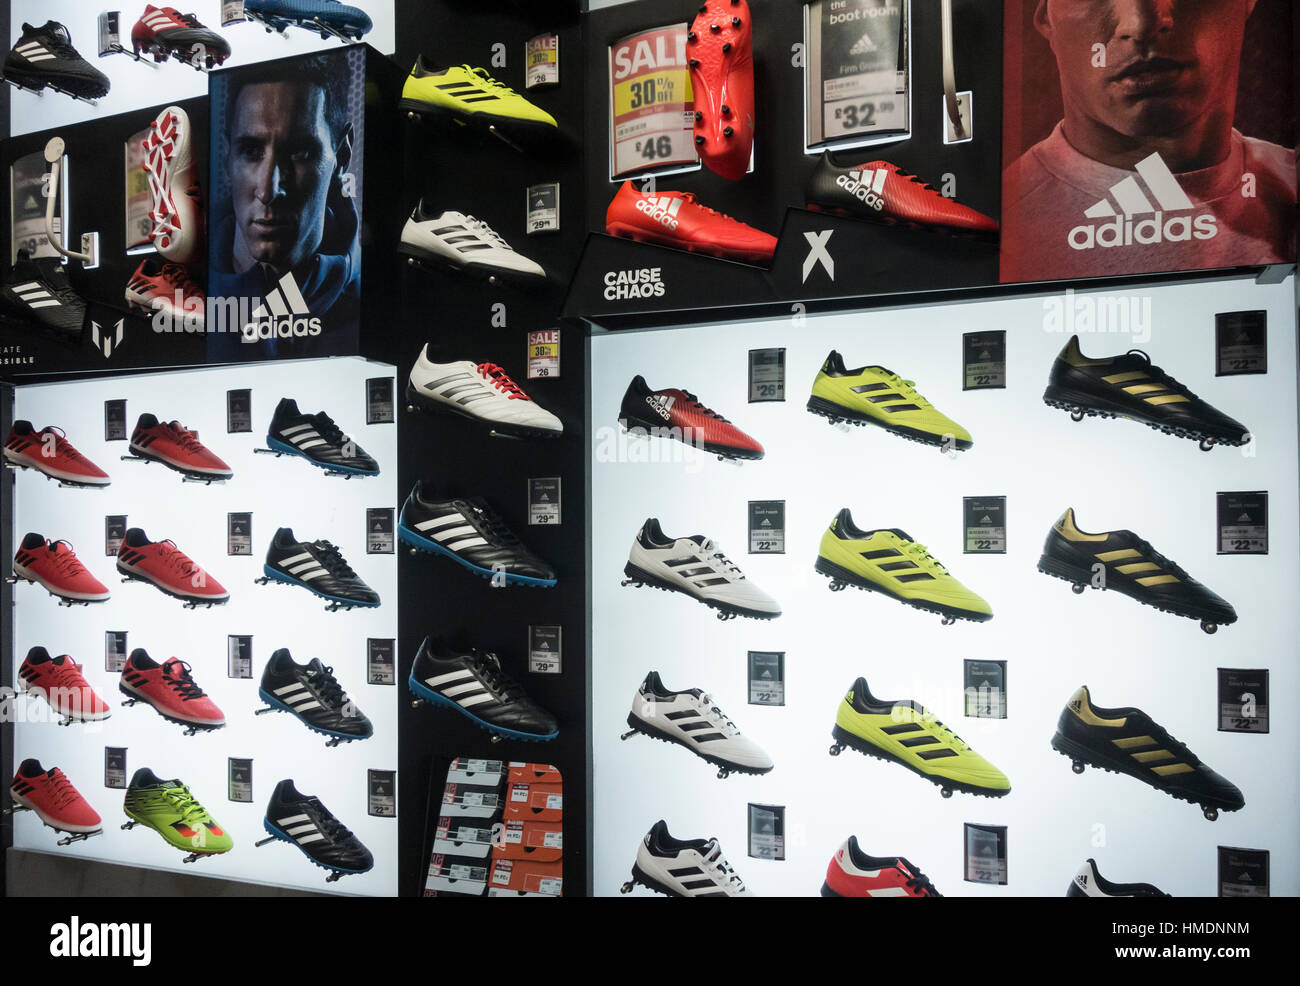 adidas shop uk